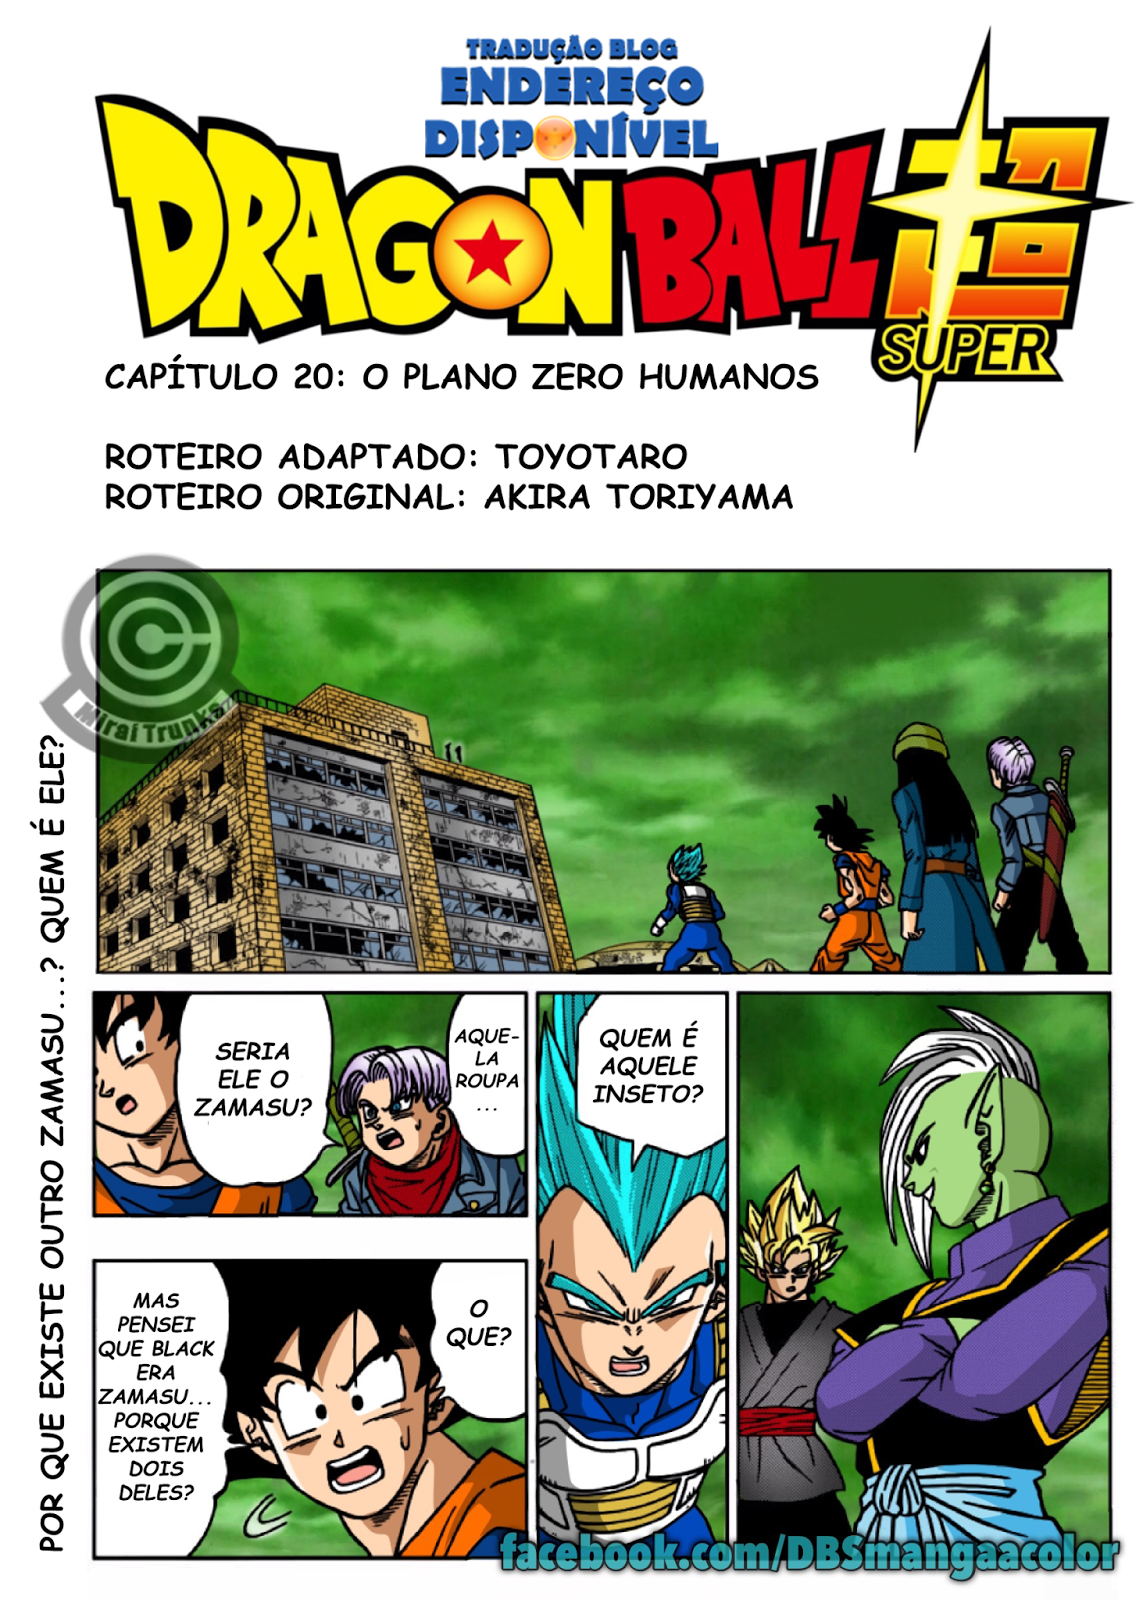 Endereço Disponível: Capítulo 20 do Mangá de Dragon Ball Super Traduzido -  O Plano Zero Humanos